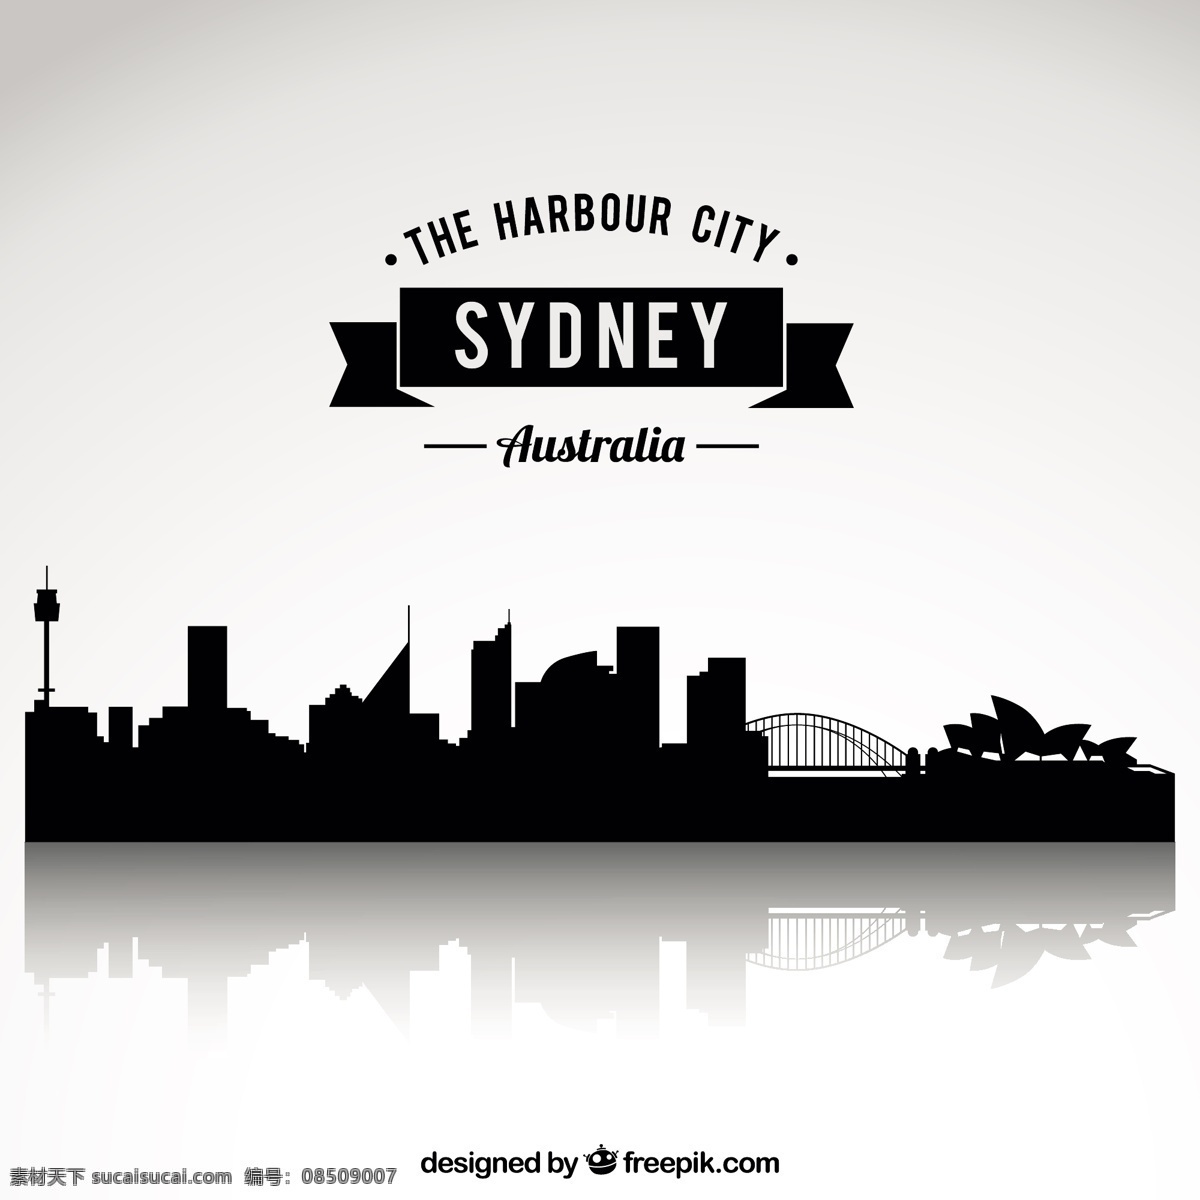 悉尼的天际线 城市 建筑 景观 天际线 城镇 城市景观 澳大利亚 城市天际线 城市建筑 城市剪影 剪影 悉尼 港湾 白色